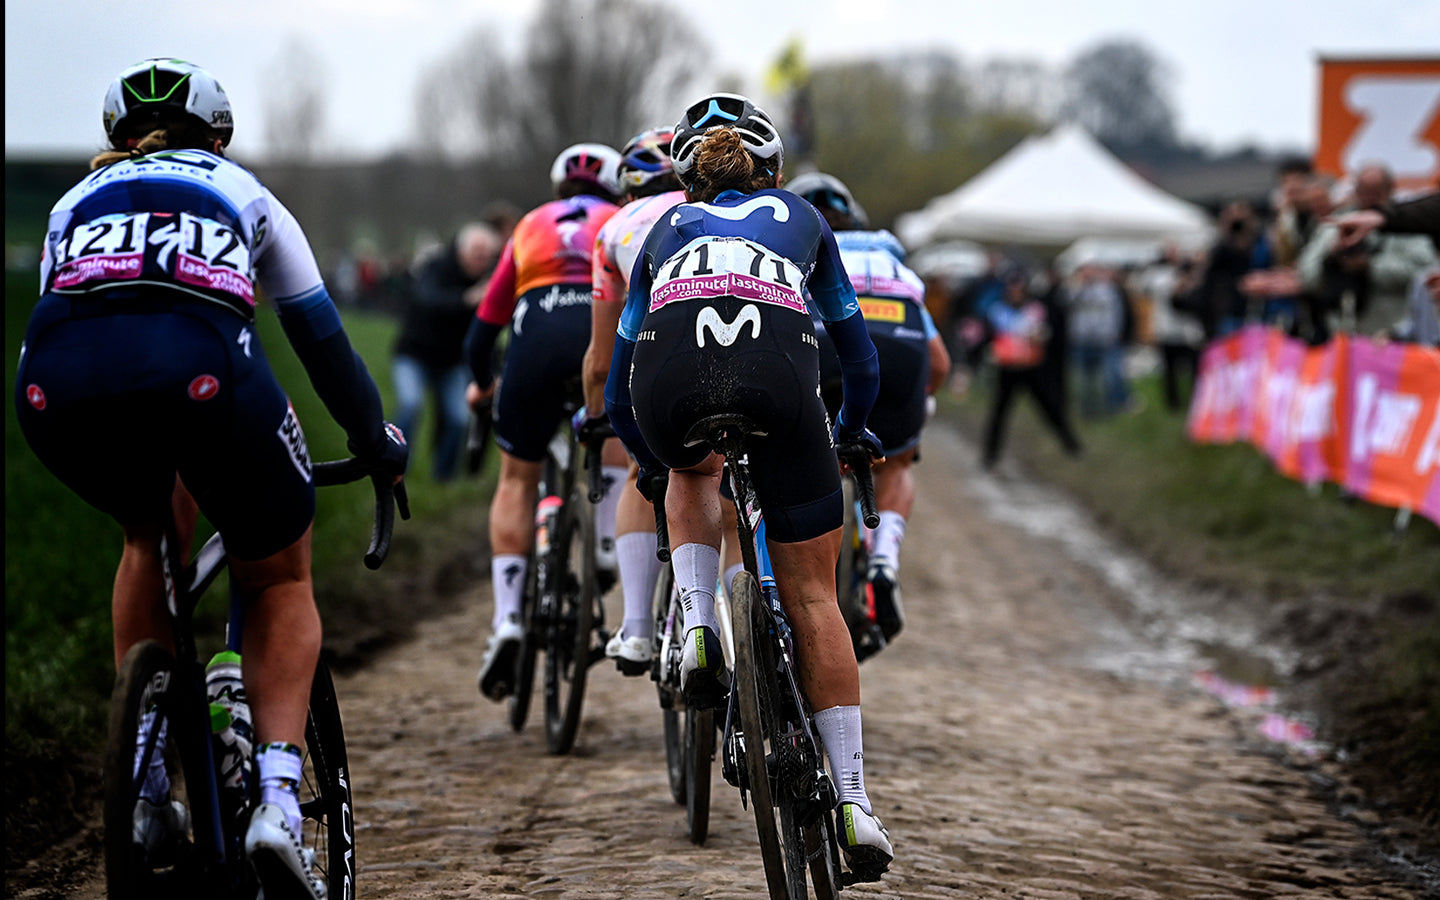 Auf seinem Rücken, mit der Nummer 71, Radfahrer aus dem Movistar Team Frauenmannschaft, die durch einen der charakteristischen Pavé-Abschnitte des Rennens Paris-Roubaix fährt.